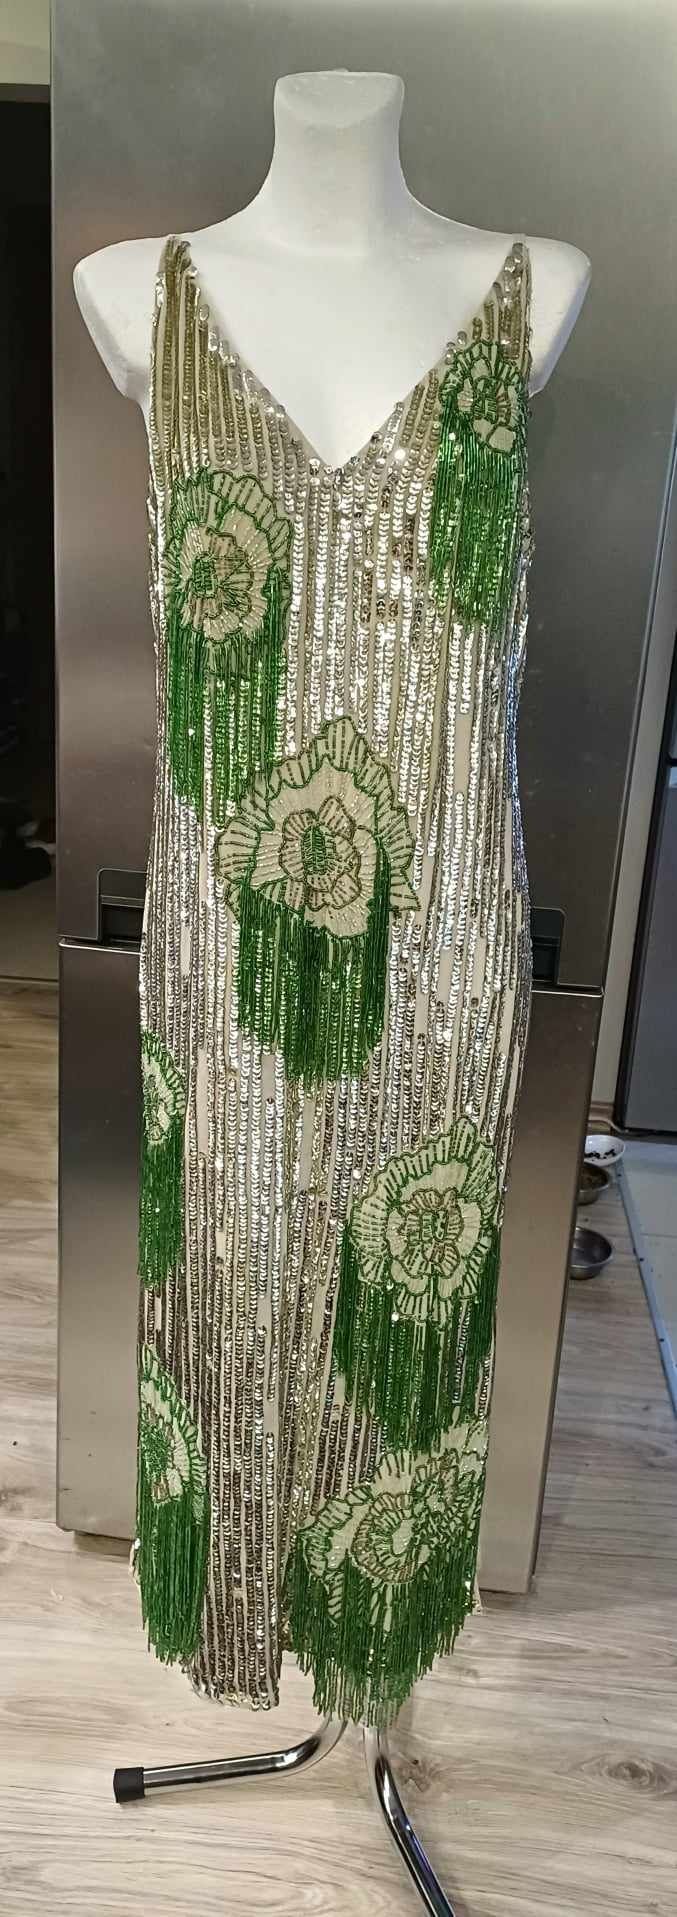 Zjawiskowa suknia Asos srebrno zielona  rozmiar 42